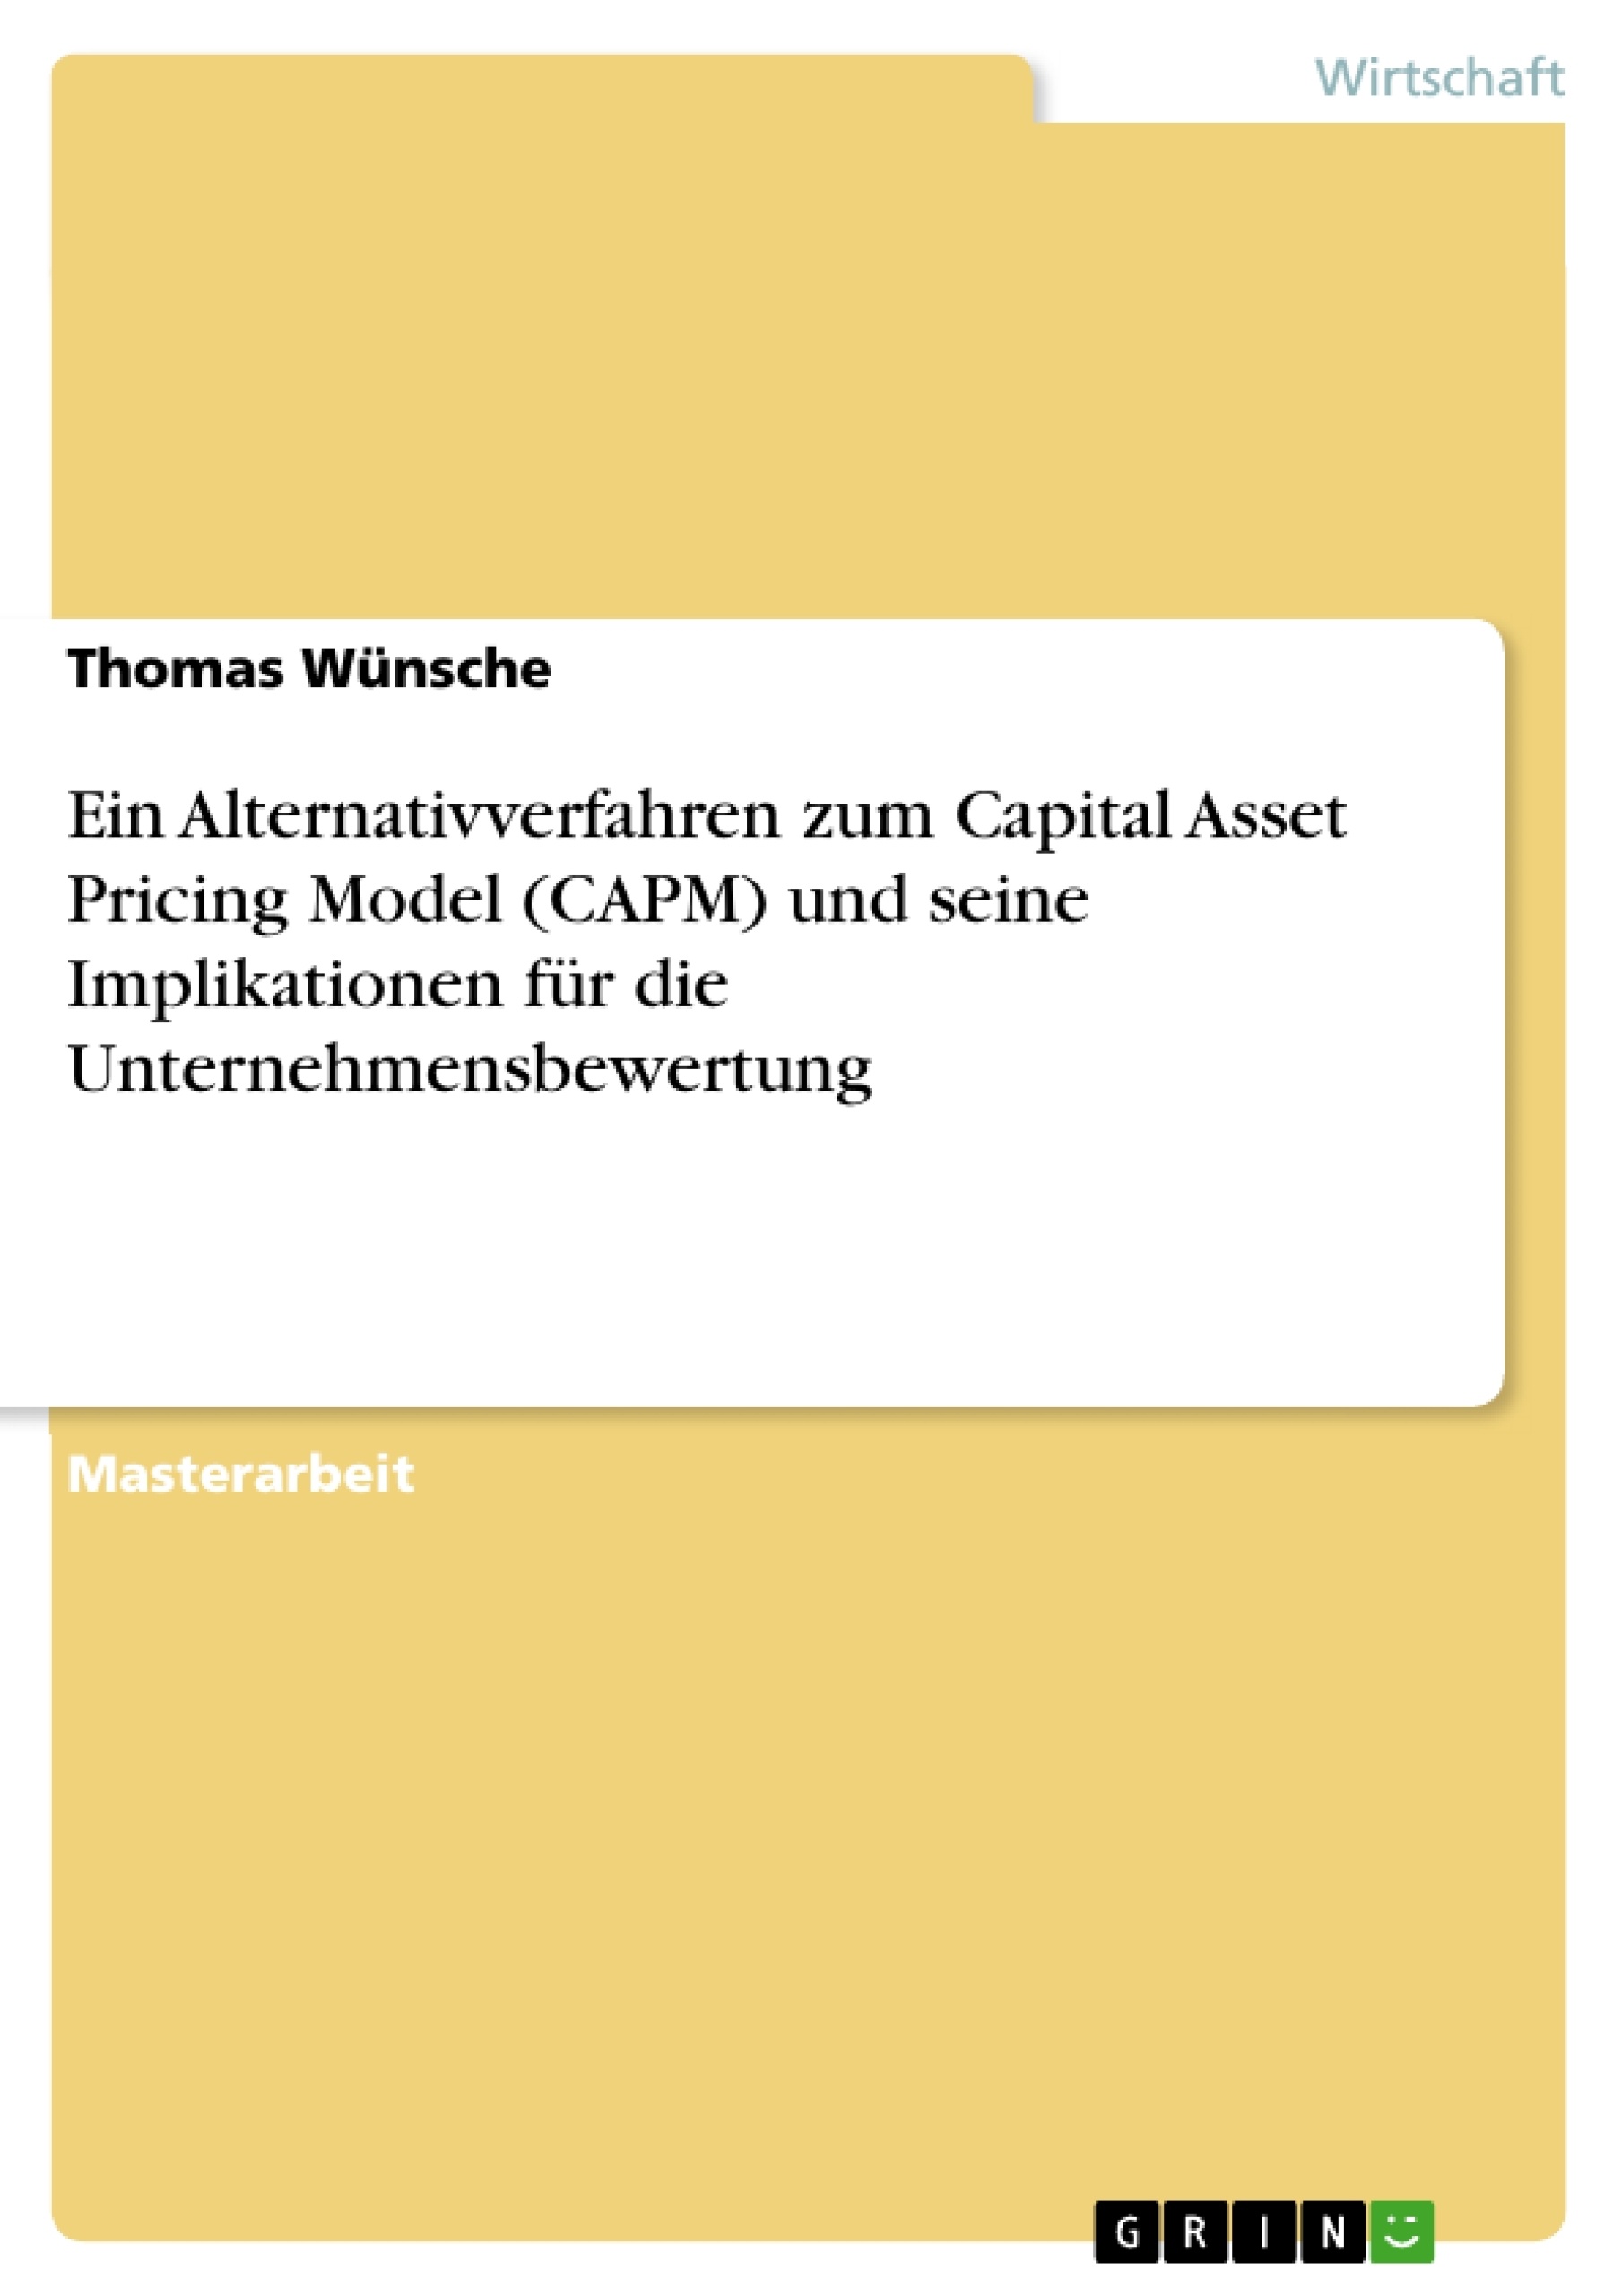 Título: Ein Alternativverfahren zum Capital Asset Pricing Model (CAPM) und seine Implikationen für die Unternehmensbewertung